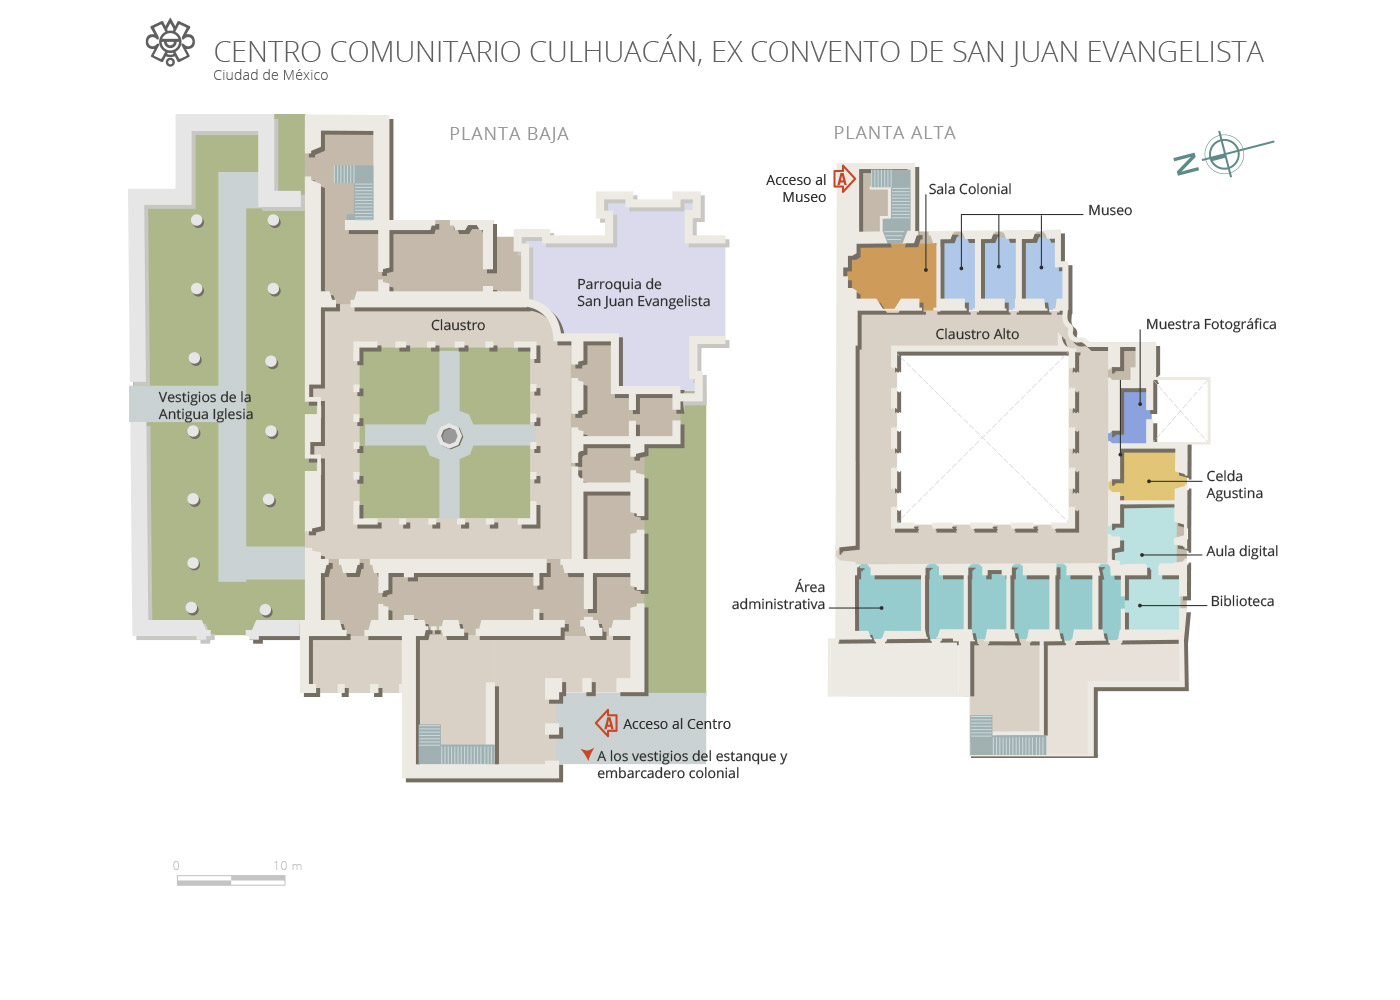 croquis Centro Comunitario Culhuacán, Ex Convento de San Juan Evangelista